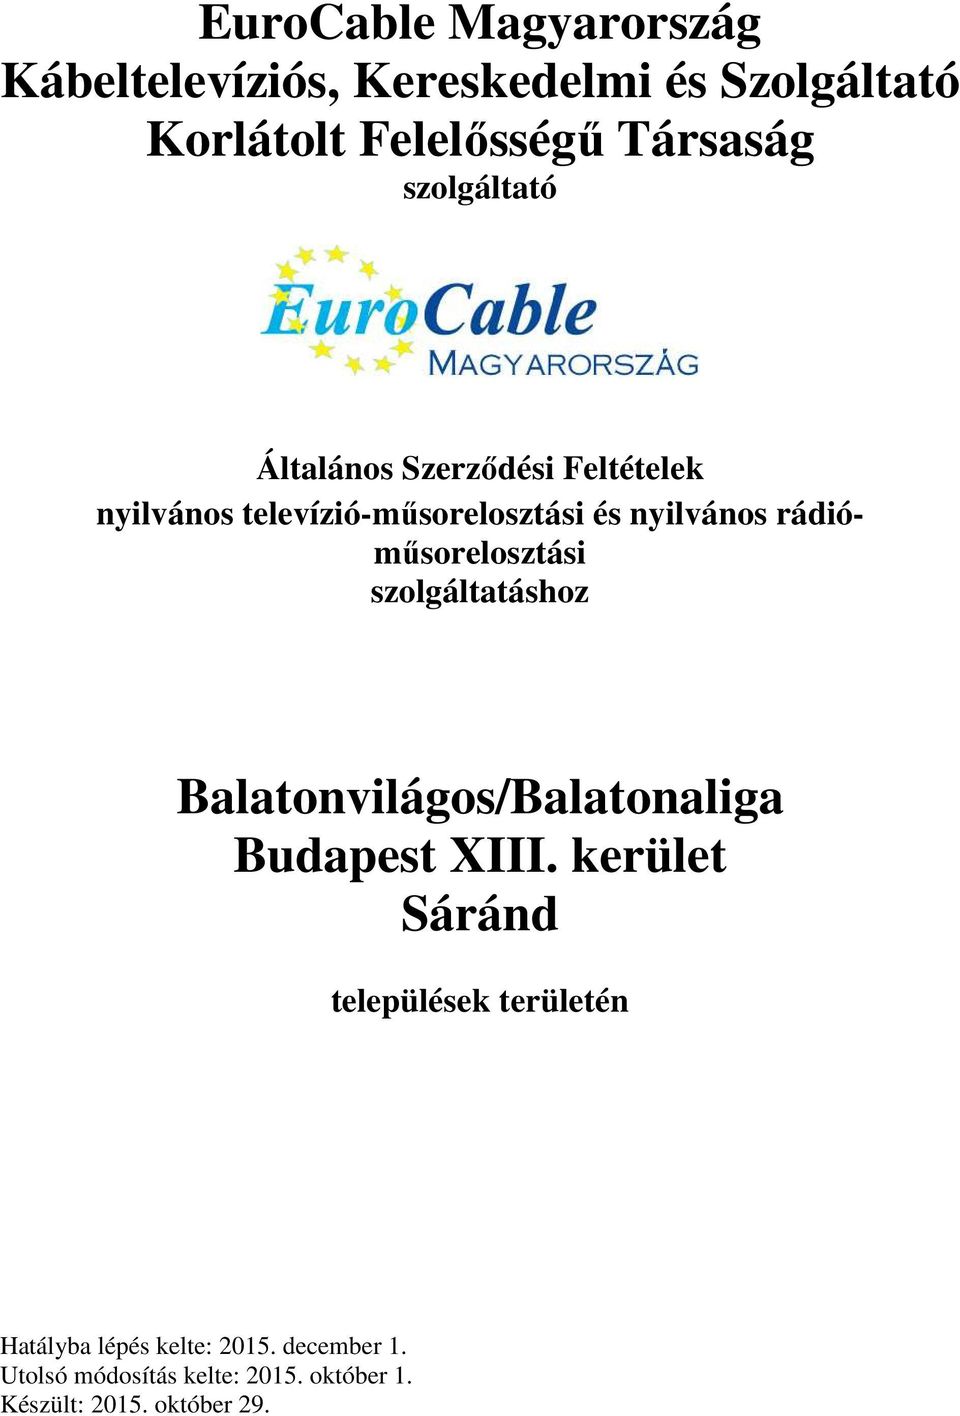 EuroCable Magyarország Kábeltelevíziós, Kereskedelmi és Szolgáltató  Korlátolt Felelősségű Társaság szolgáltató - PDF Free Download